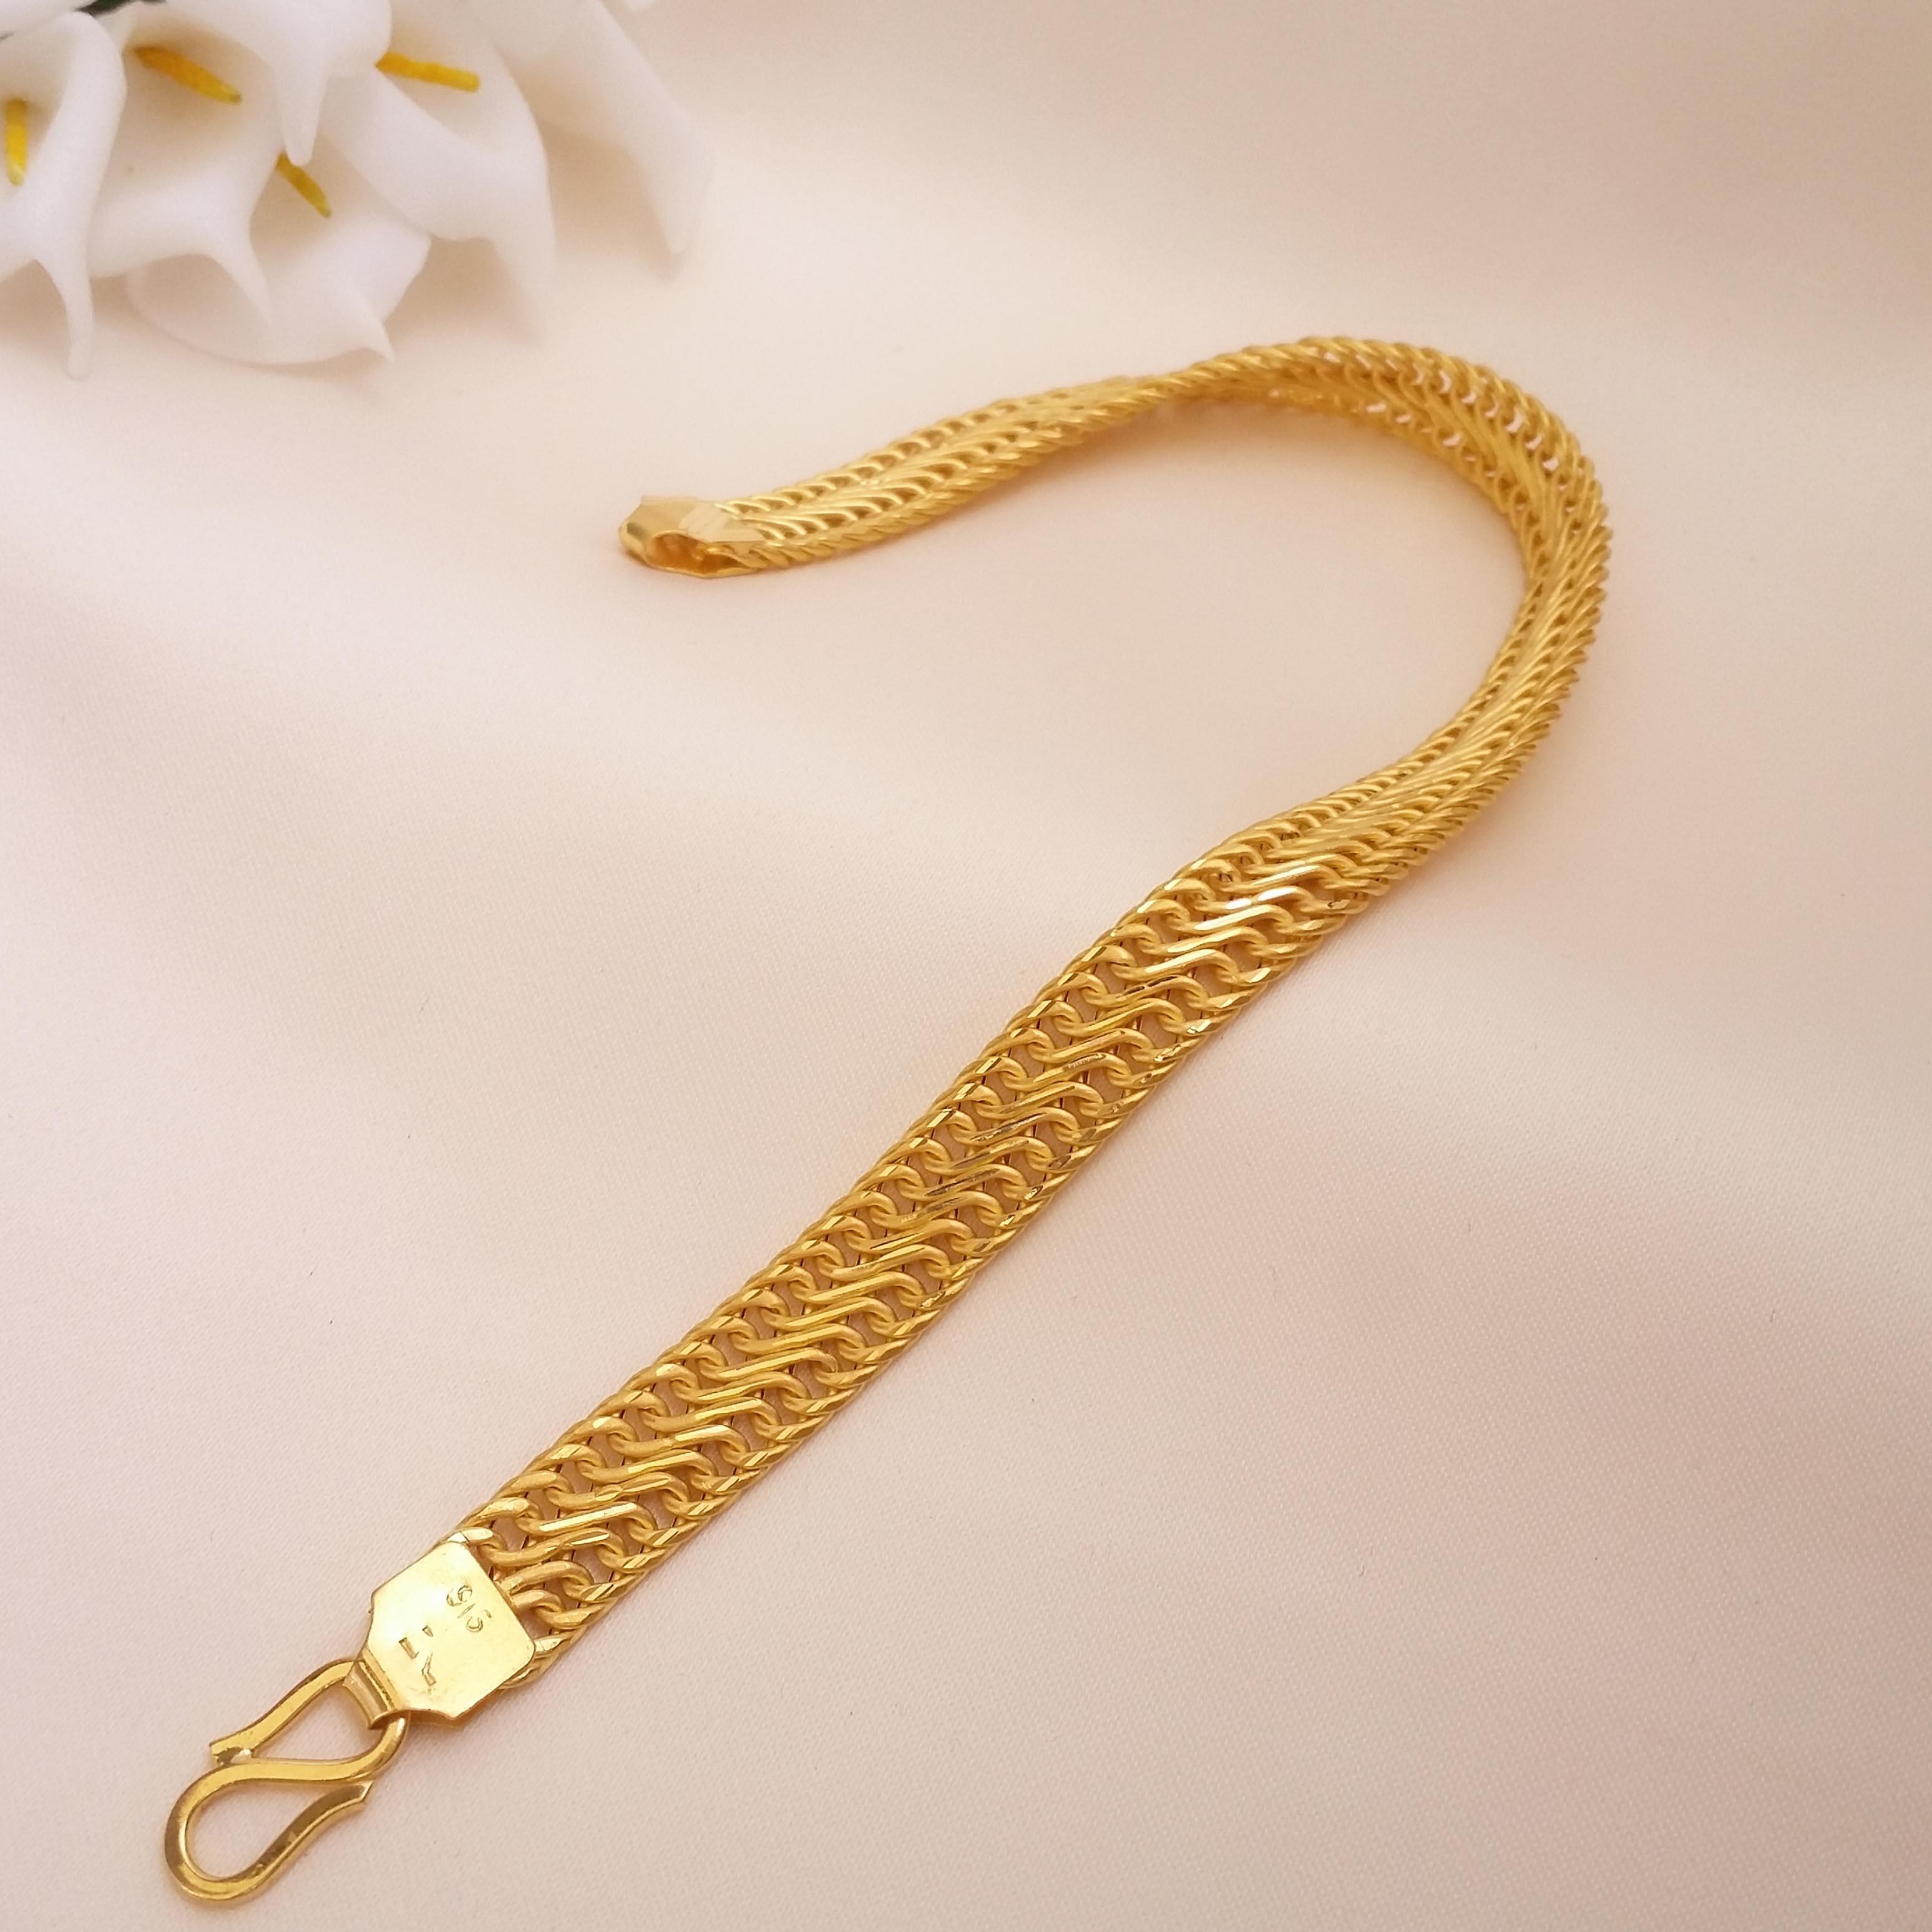 Vishesh jewels 916 Gold Bangle Bracelet 15 Grams